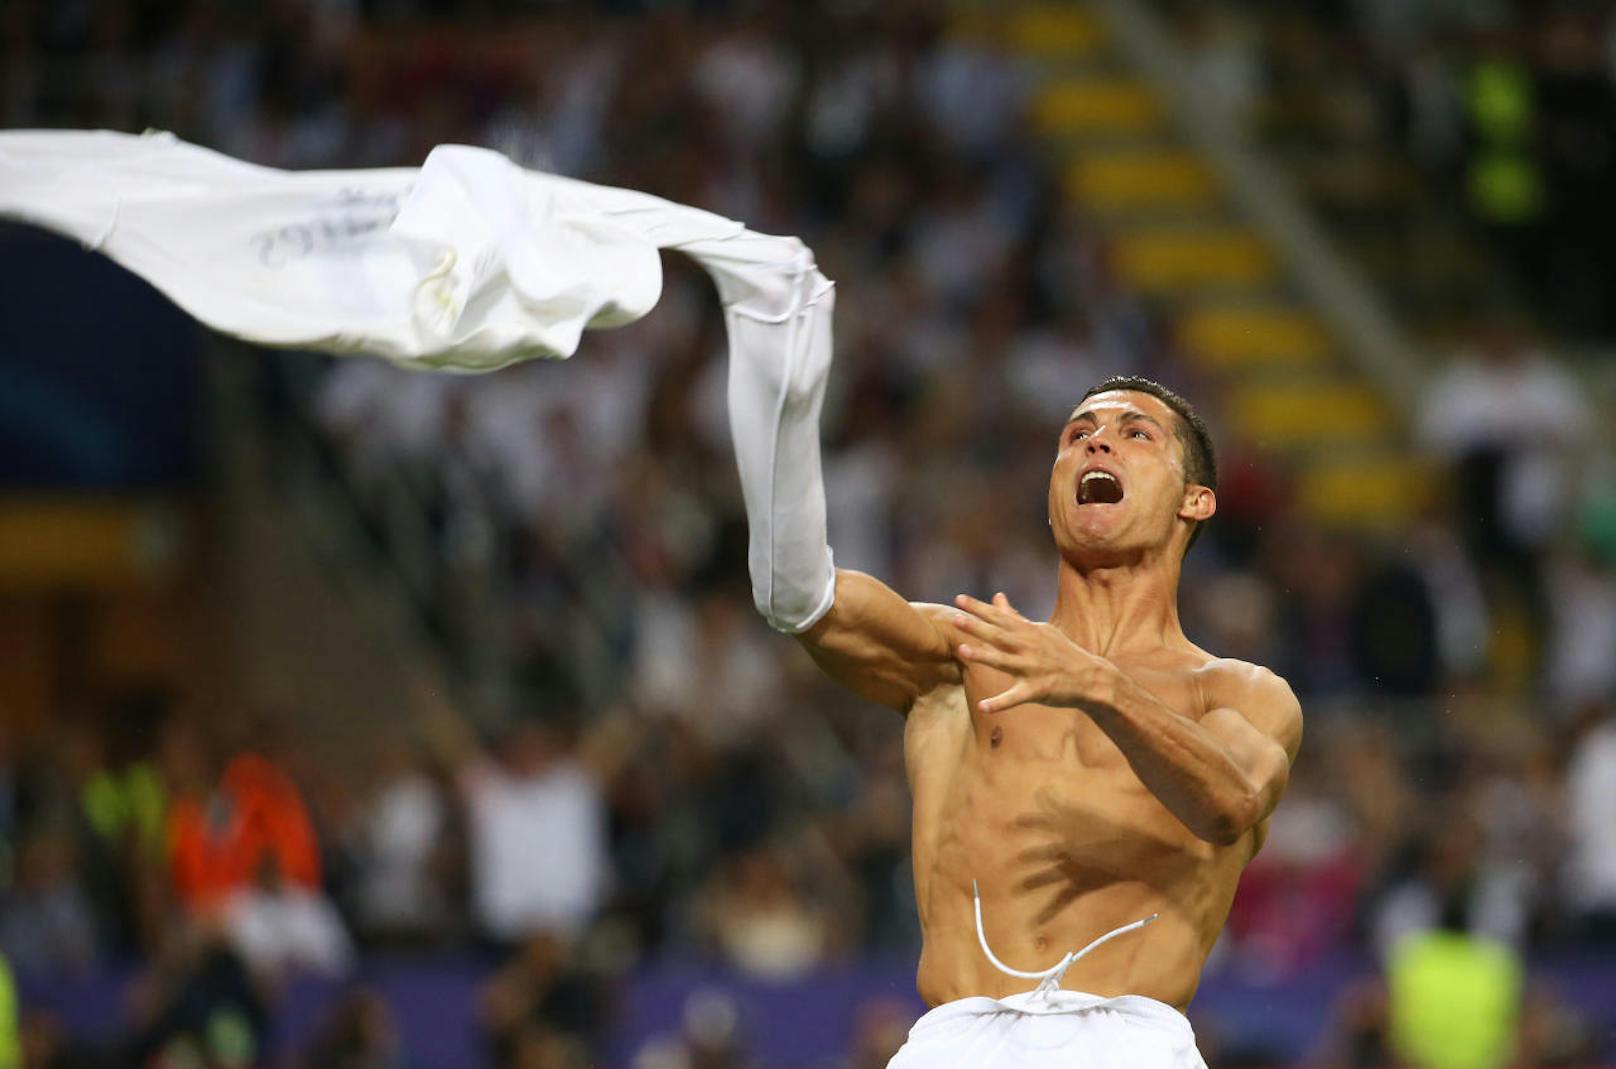 Der letzte Versuch blieb natürlich Ronaldo vorbehalten, der vor Freude zwar nicht aus der Haut, aber zumindest aus dem Trikot fuhr.